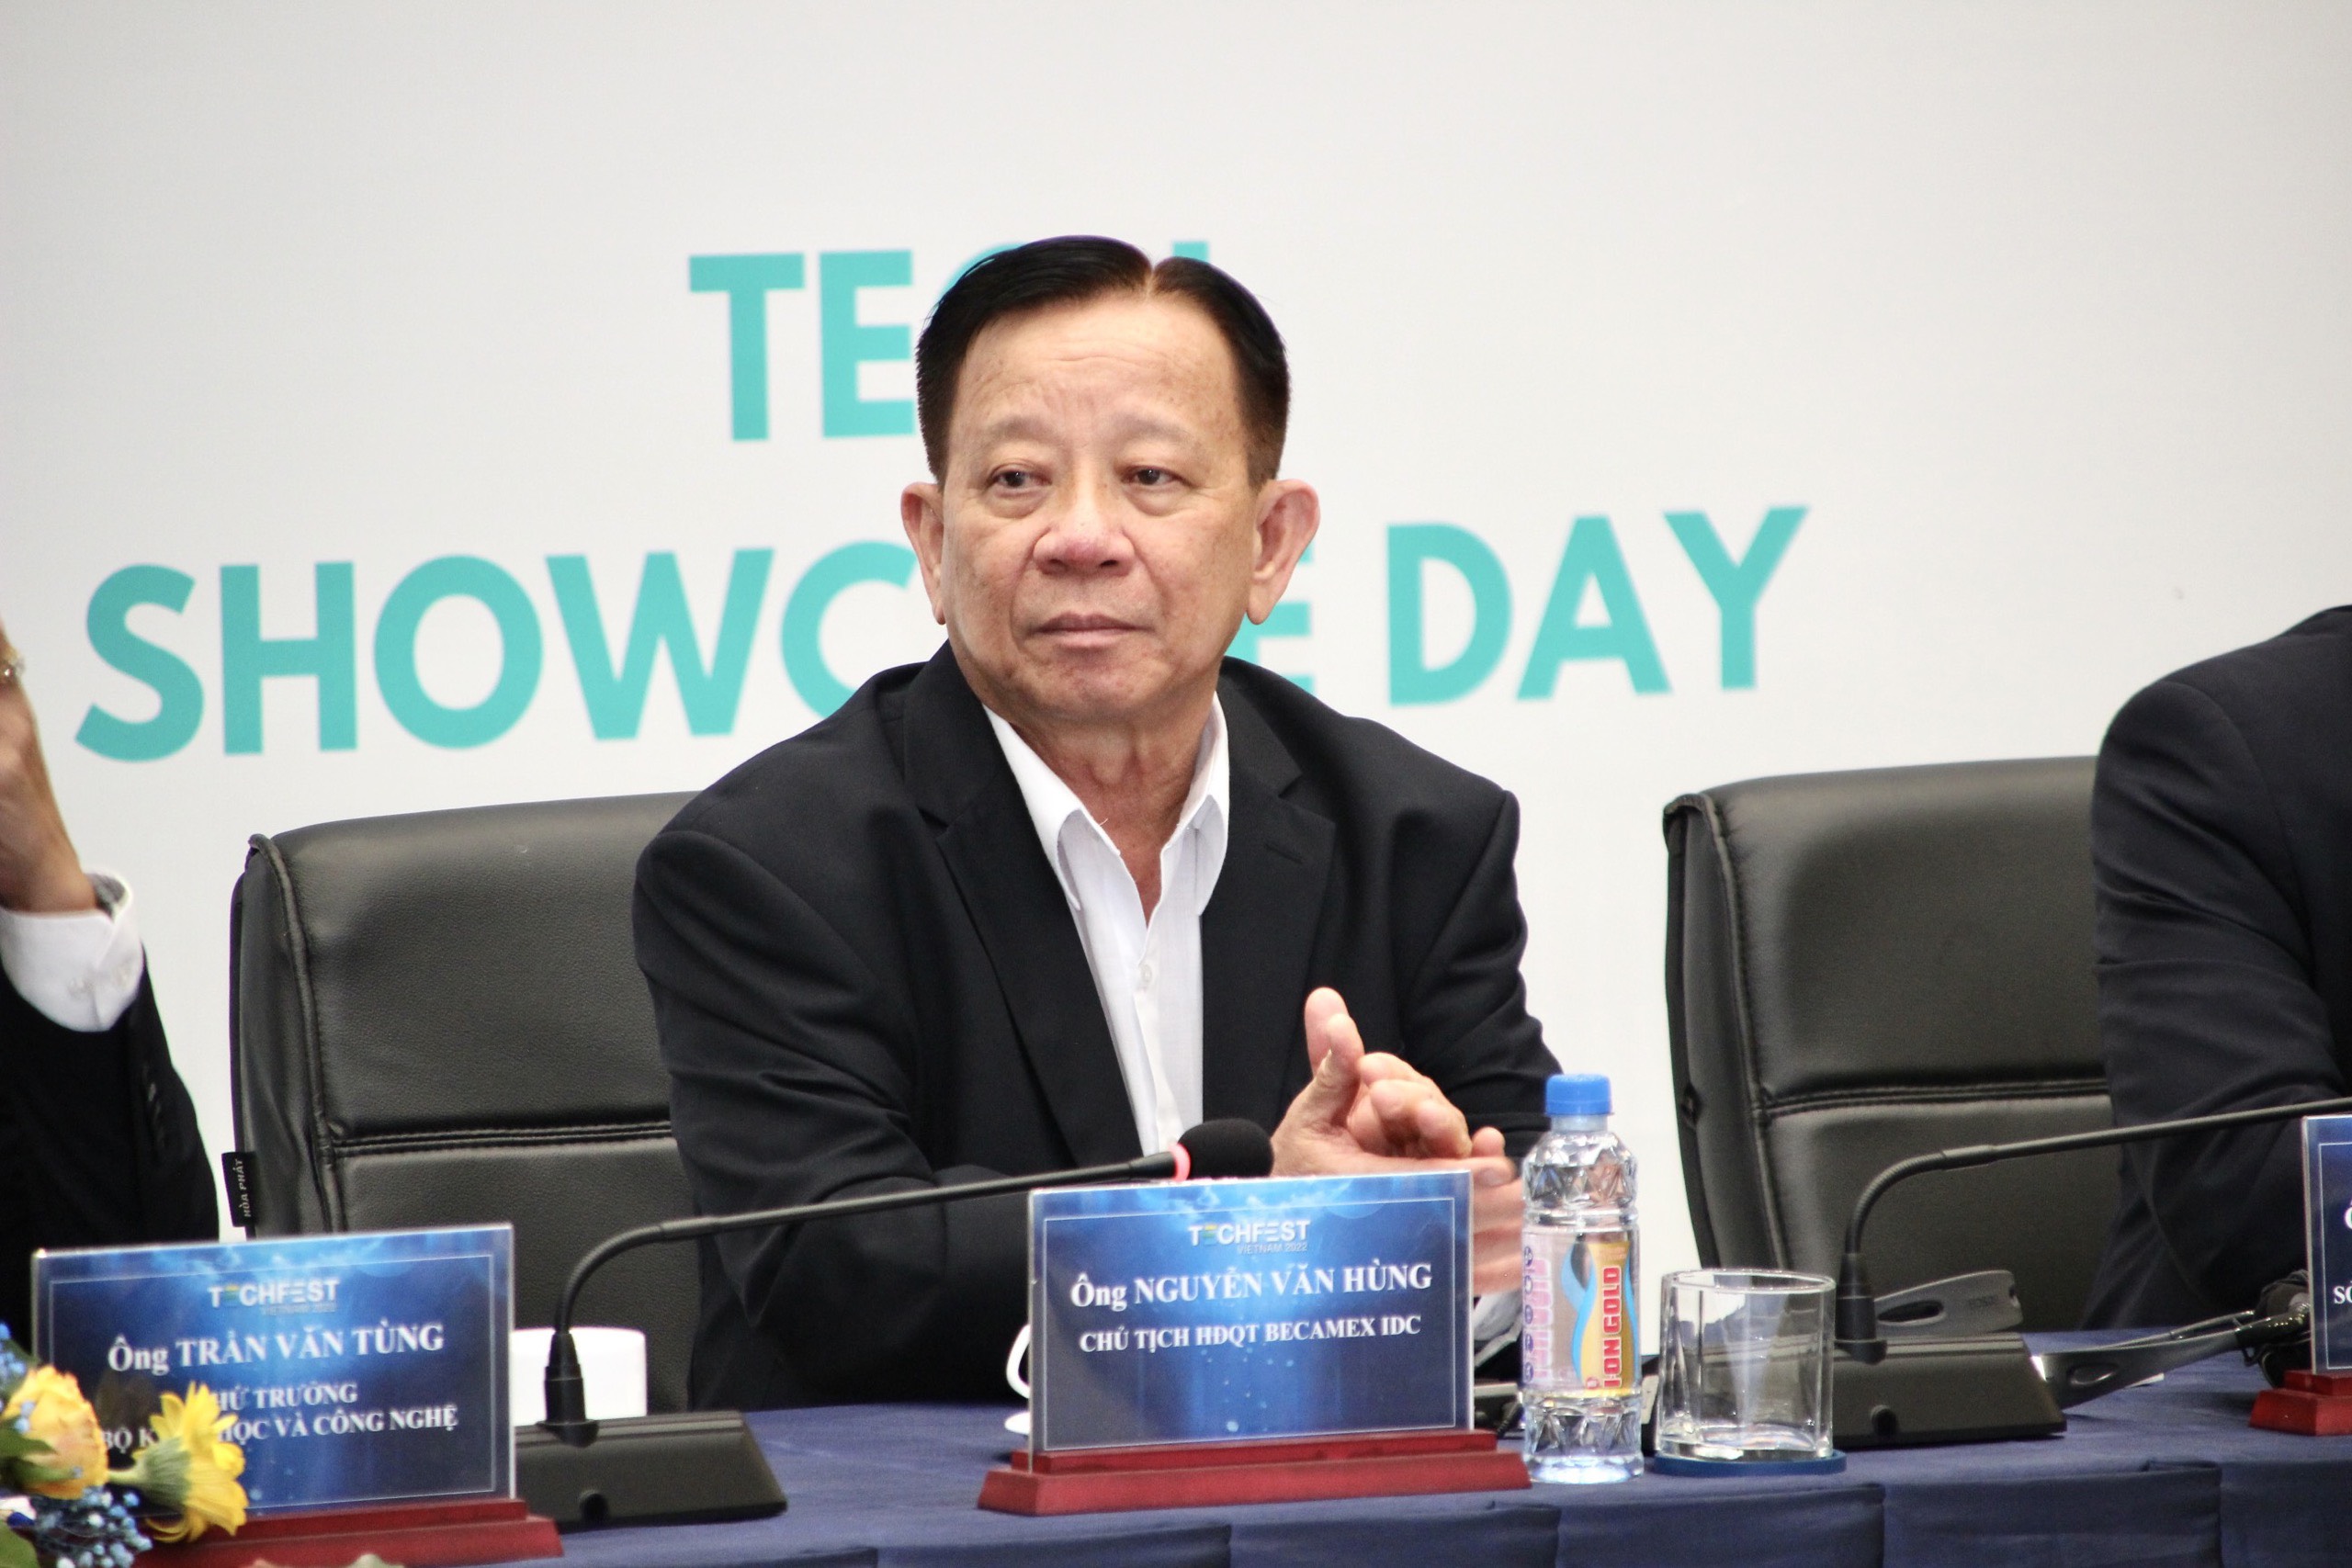 Đồng chí Nguyễn Văn Hùng - Chủ tịch HĐQT TCT Becamex IDC tại hội thảo.